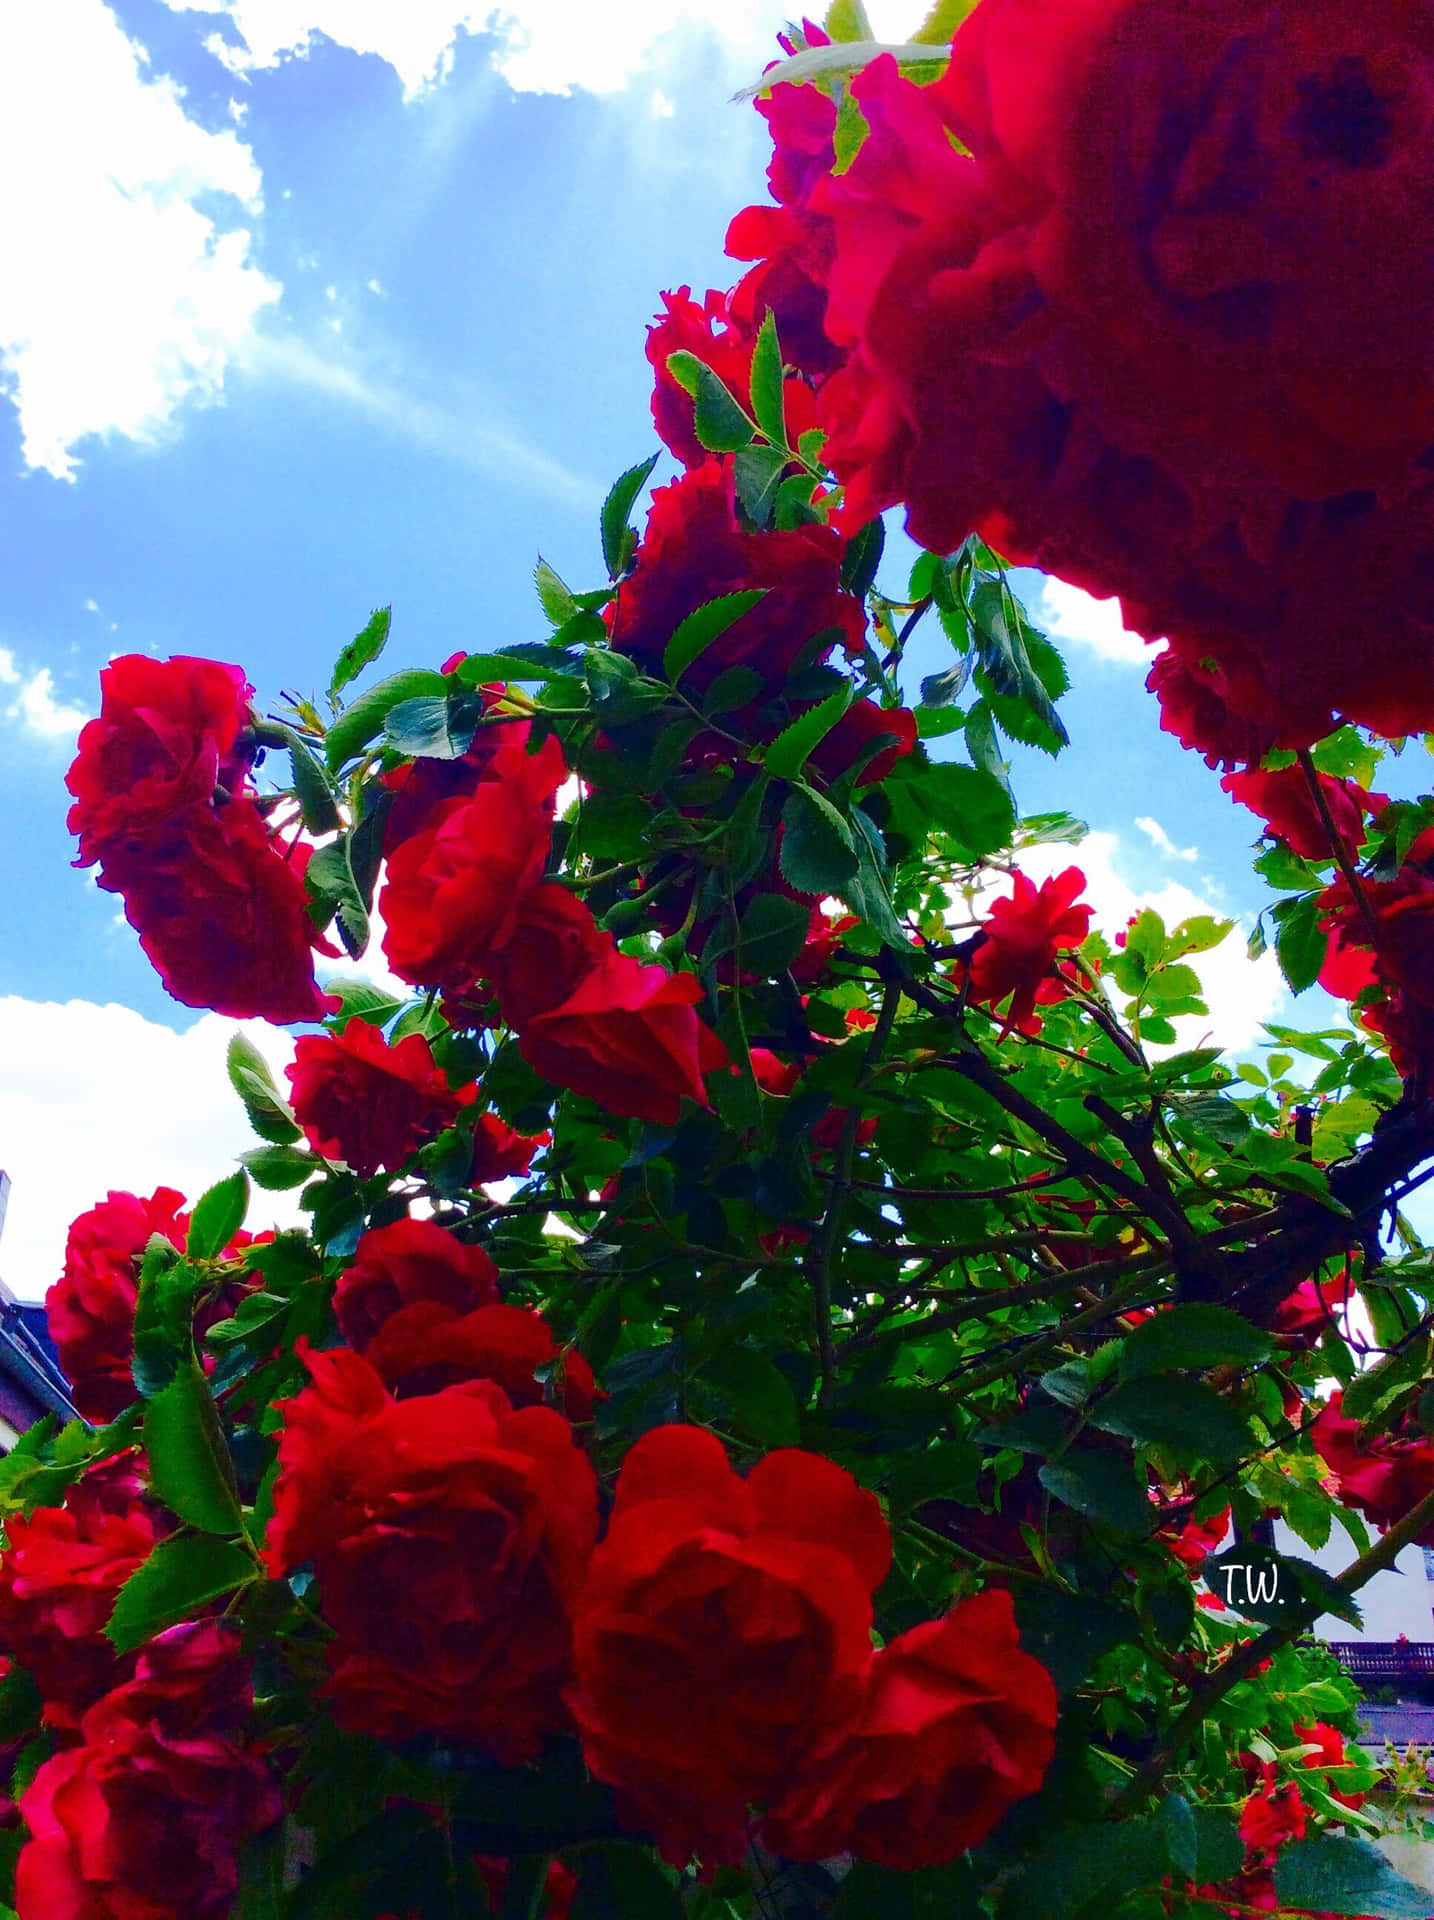 Eineeinzelne Rote Rose In Voller Blüte, Im Licht Leuchtend. Wallpaper